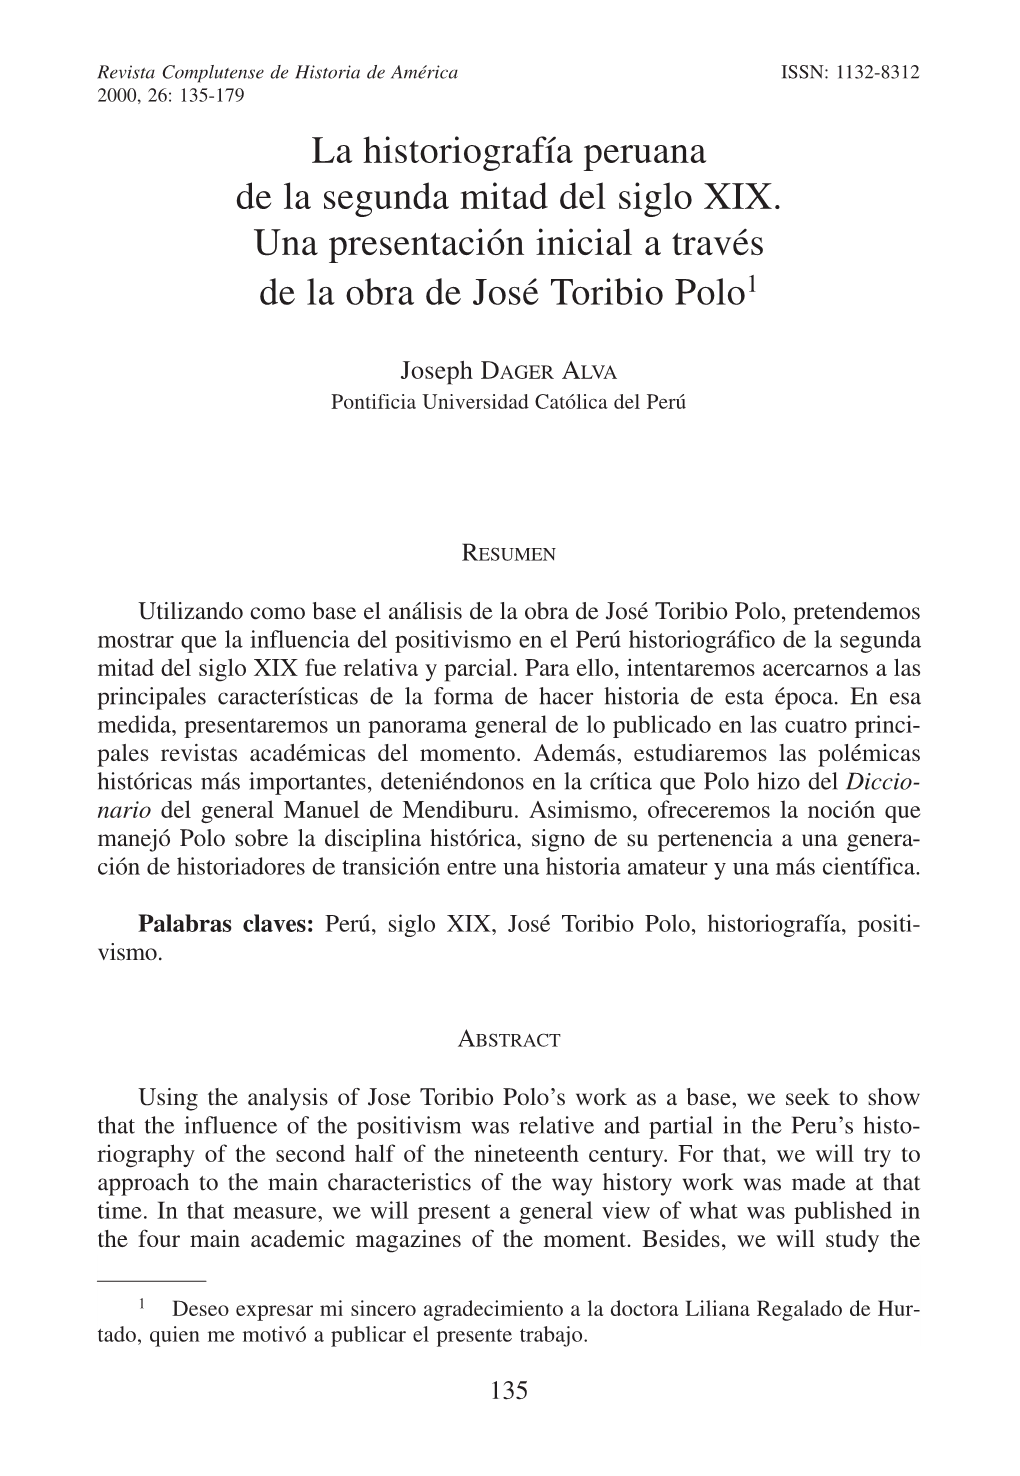 La Historiografía Peruana De La Segunda Mitad Del Siglo XIX. Una Presentación Inicial a Través De La Obra De José Toribio Polo1